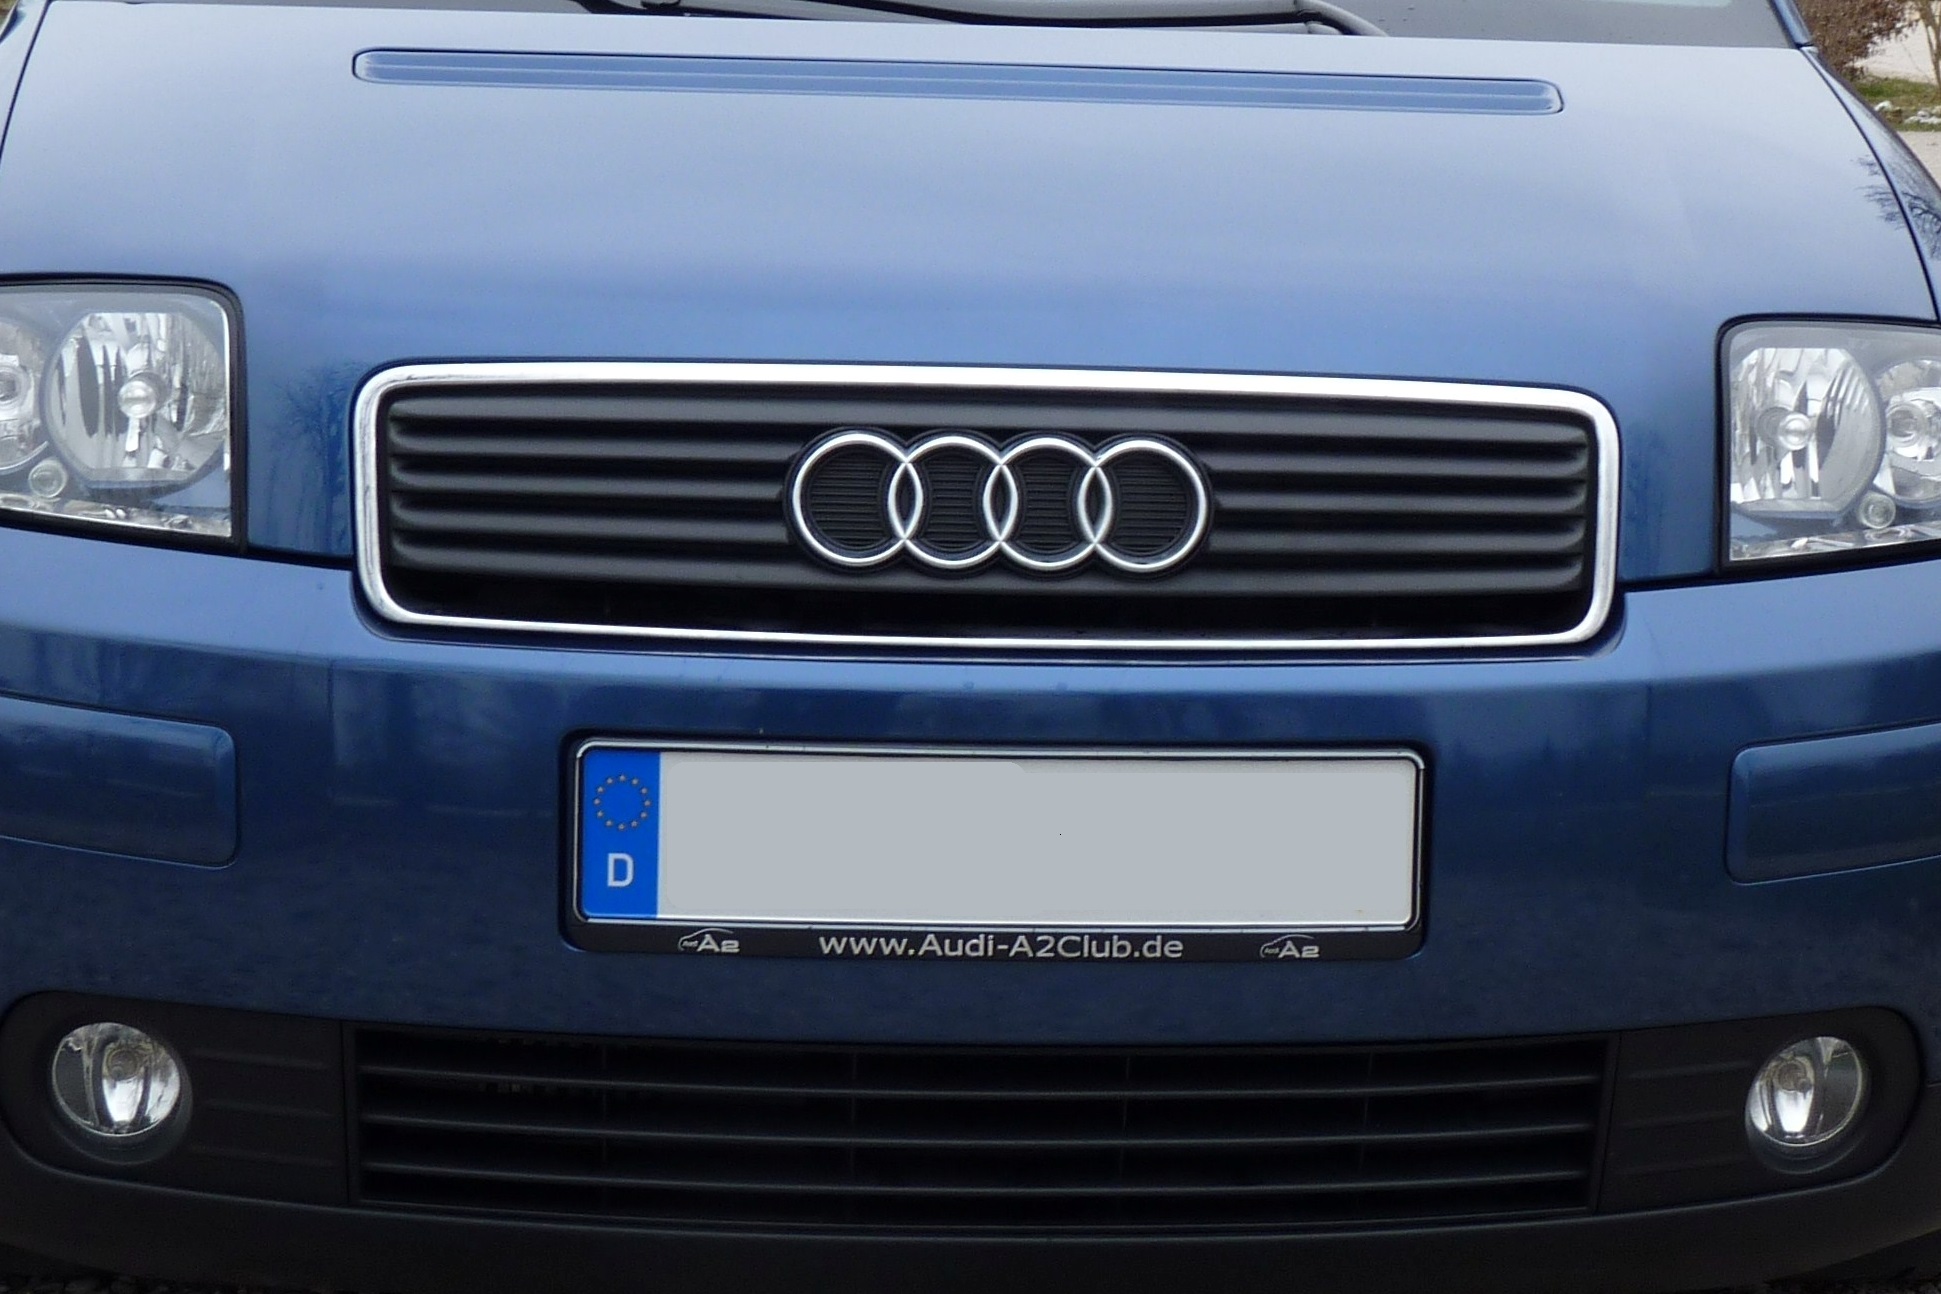 Premium-Kennzeichenbeleuchtung - Seite 5 - Technik - Audi A2 Club